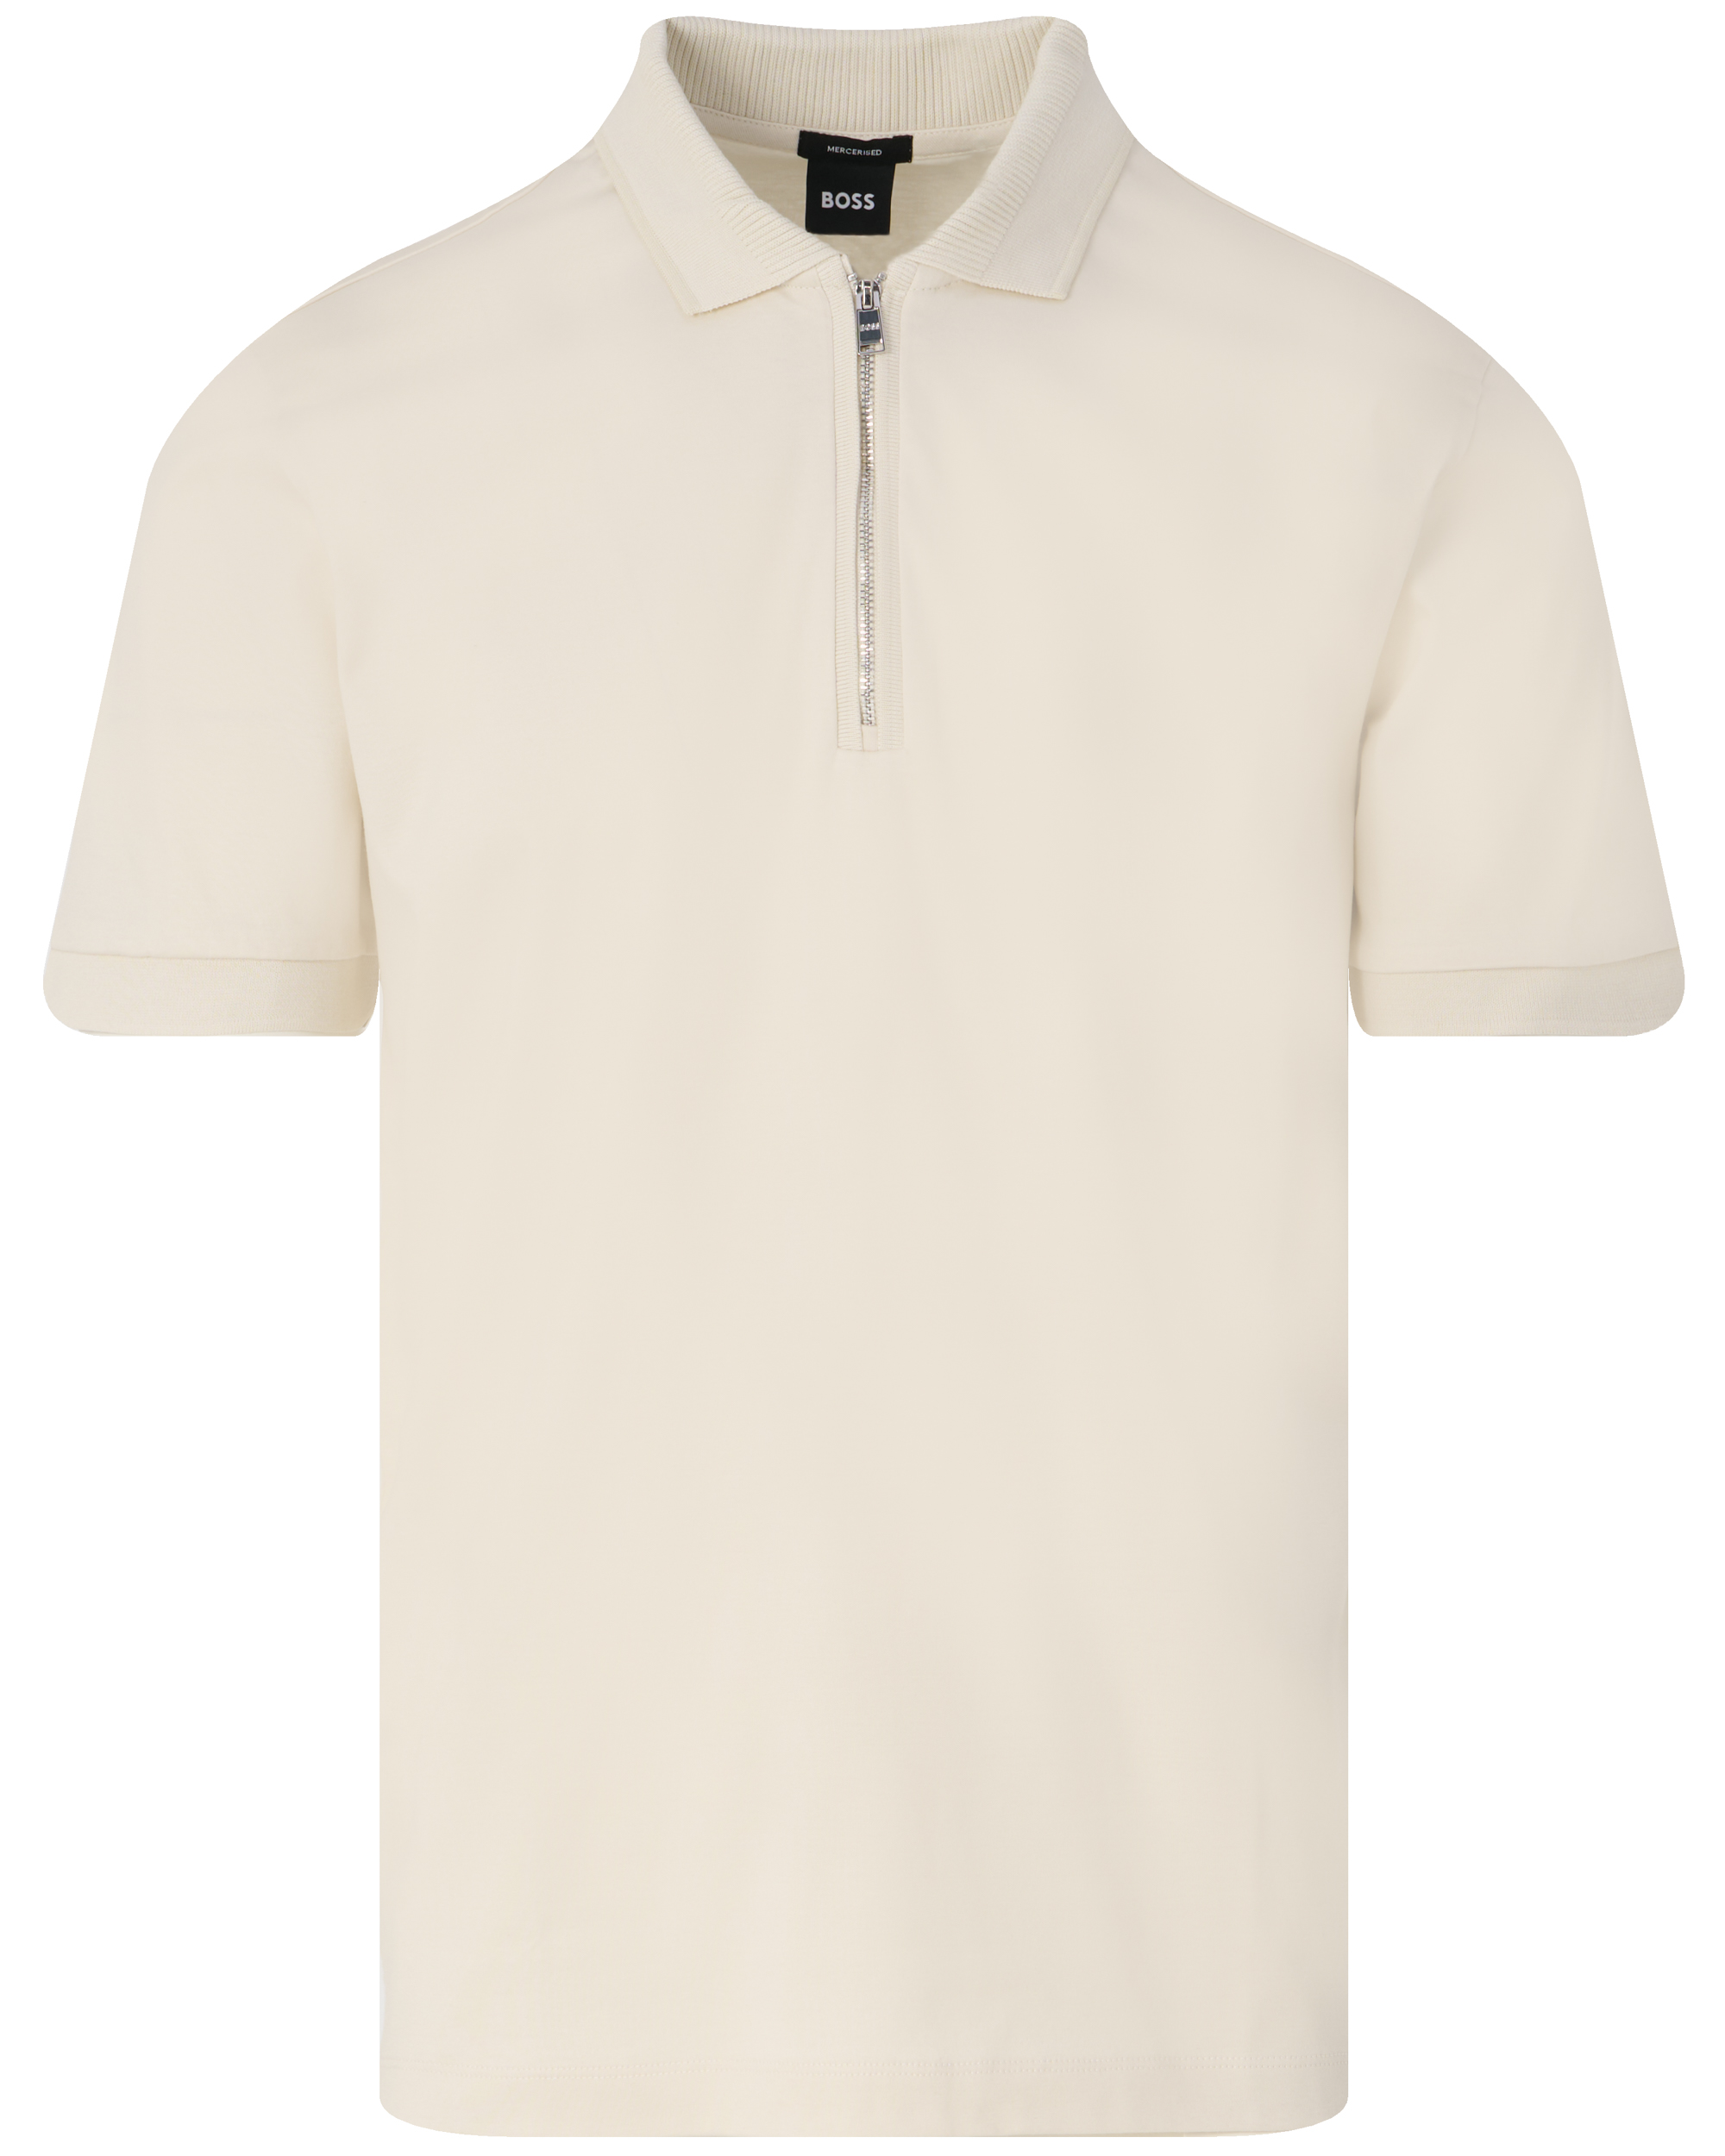 BOSS Black Polston Cotton-Jersey Polo Shirt - L